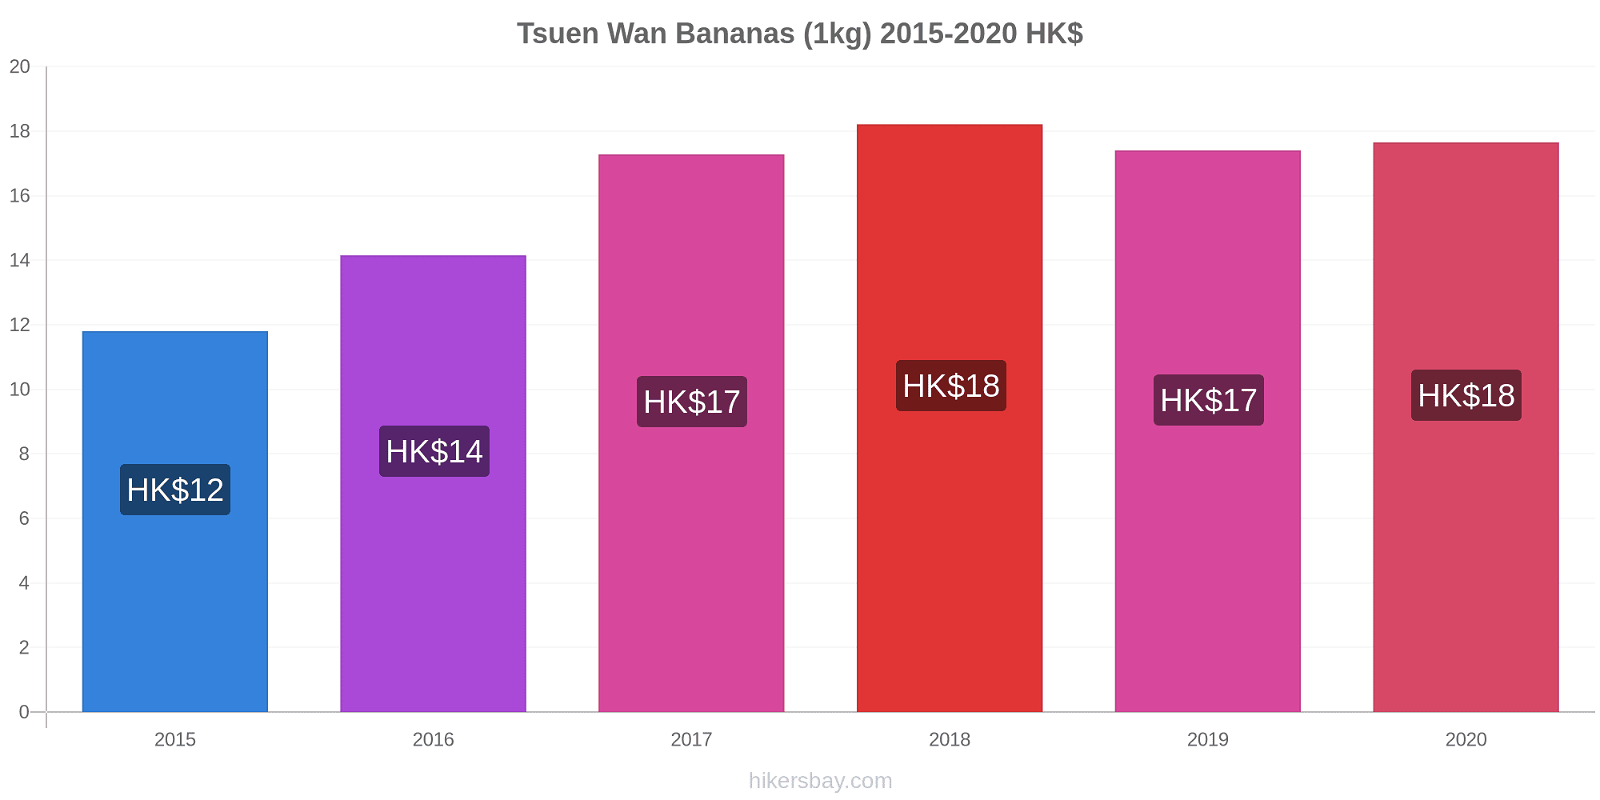 Tsuen Wan price changes Bananas (1kg) hikersbay.com